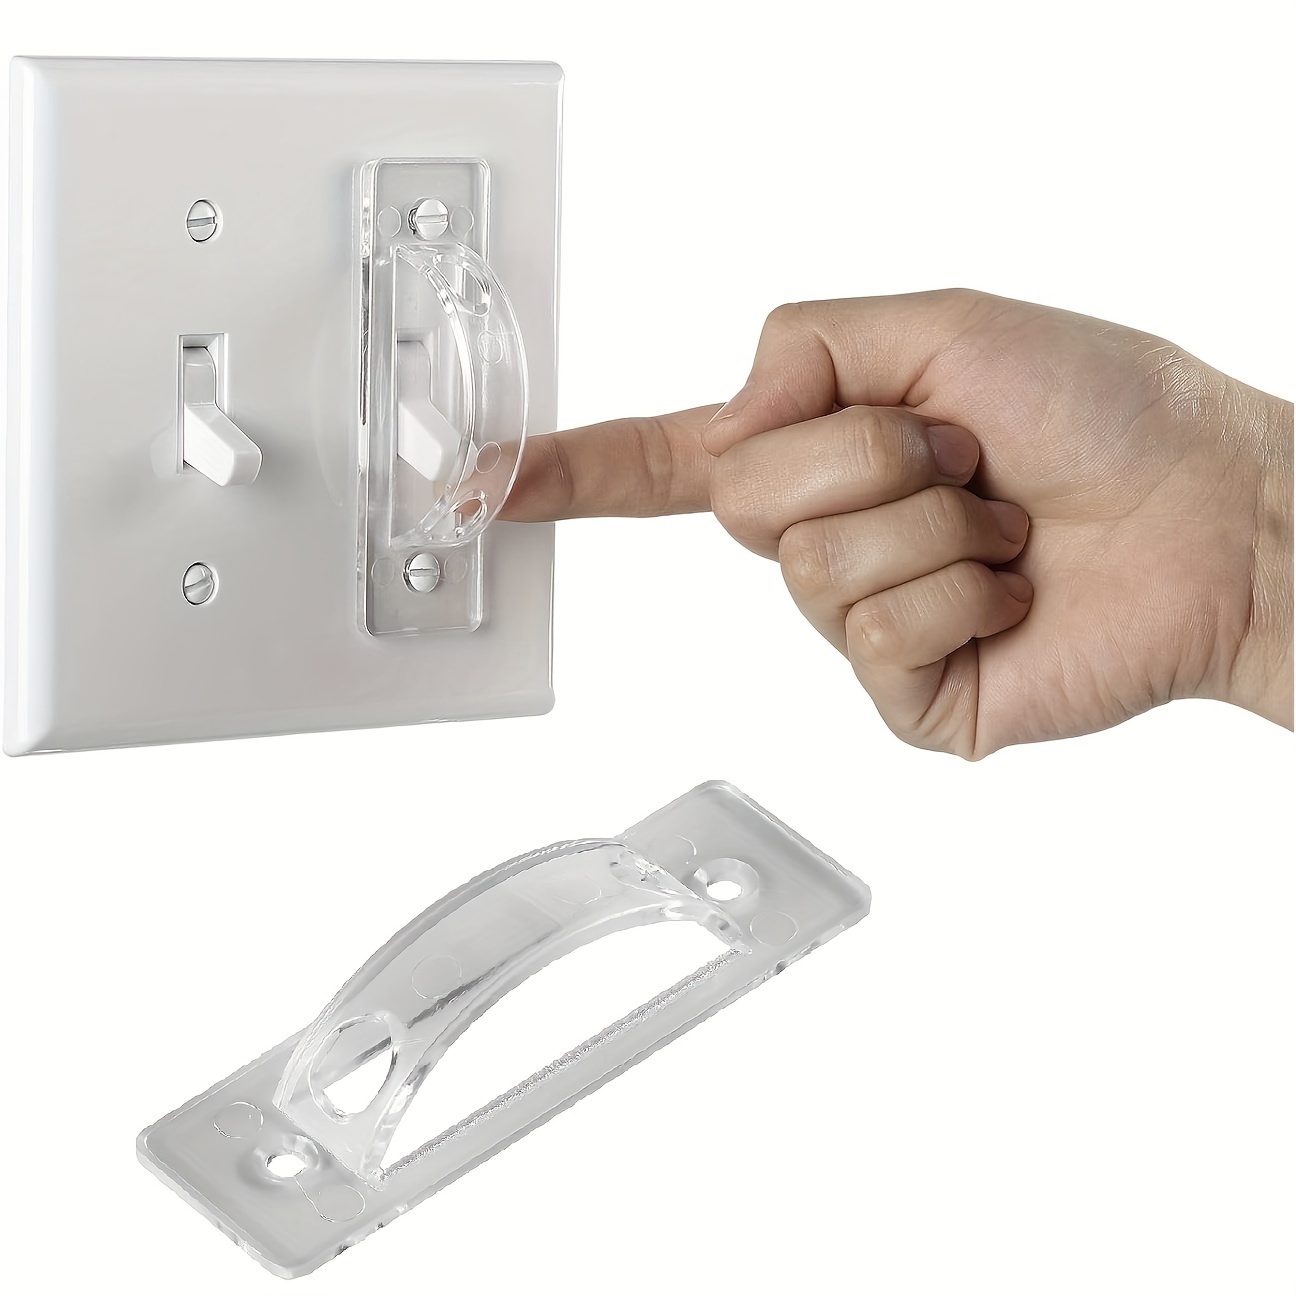 Protector de interruptor de luz (paquete de 1)